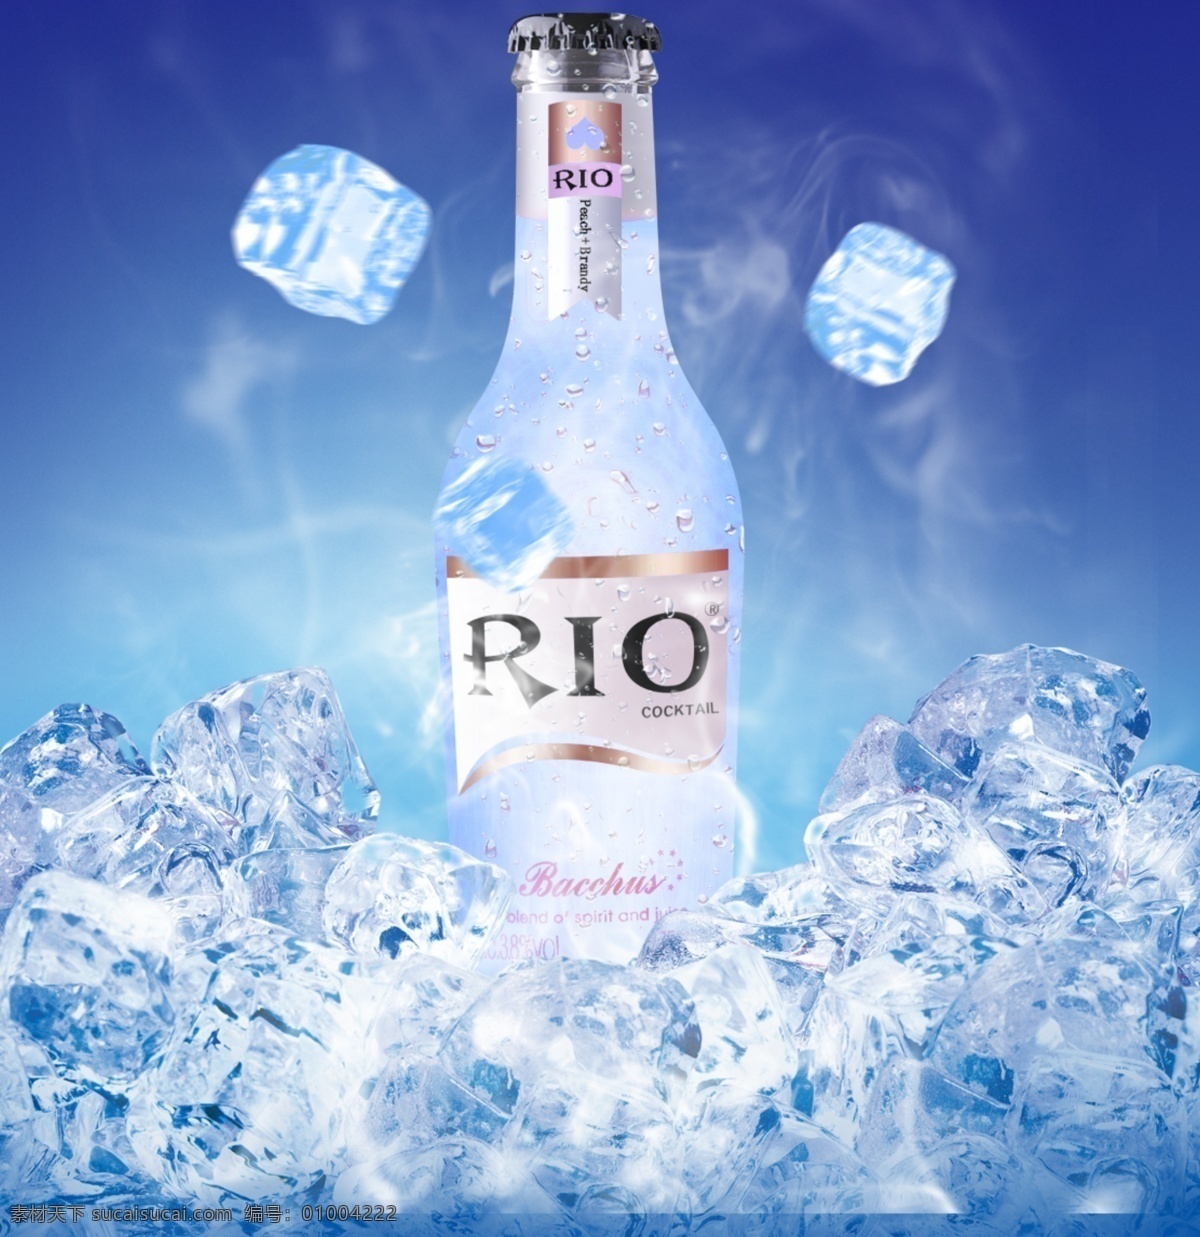 锐澳瓶rio 锐澳 瓶子 冰块 烟雾 冰爽 场景合成 分层 蓝色